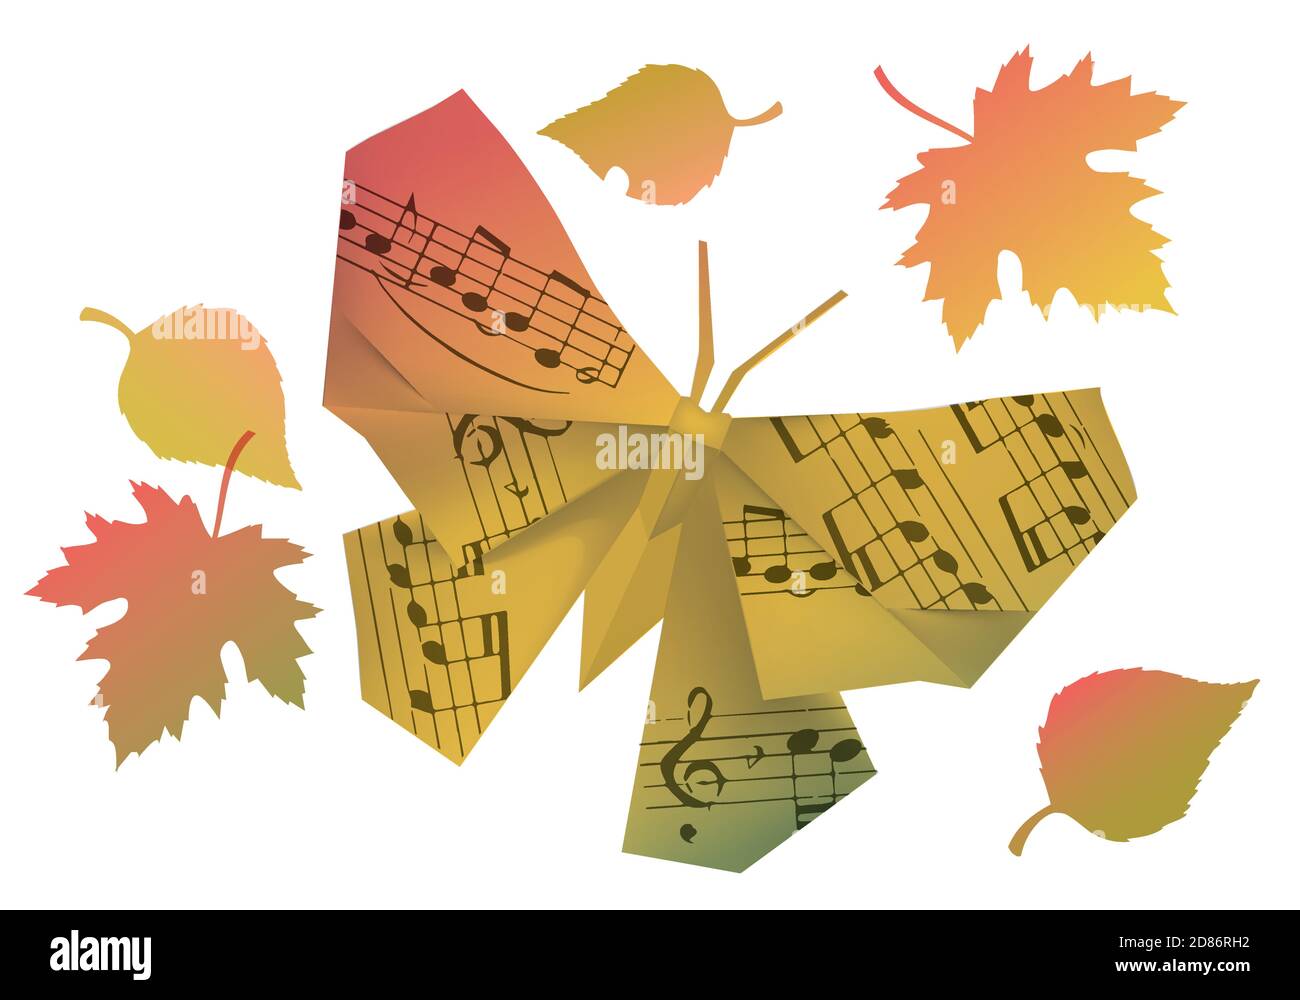 Origami Schmetterling mit Noten und Herbstblättern. Illustration von Papier-Modell des Schmetterlings in Herbstfarben symbolisieren Herbststimmung. Stock Vektor